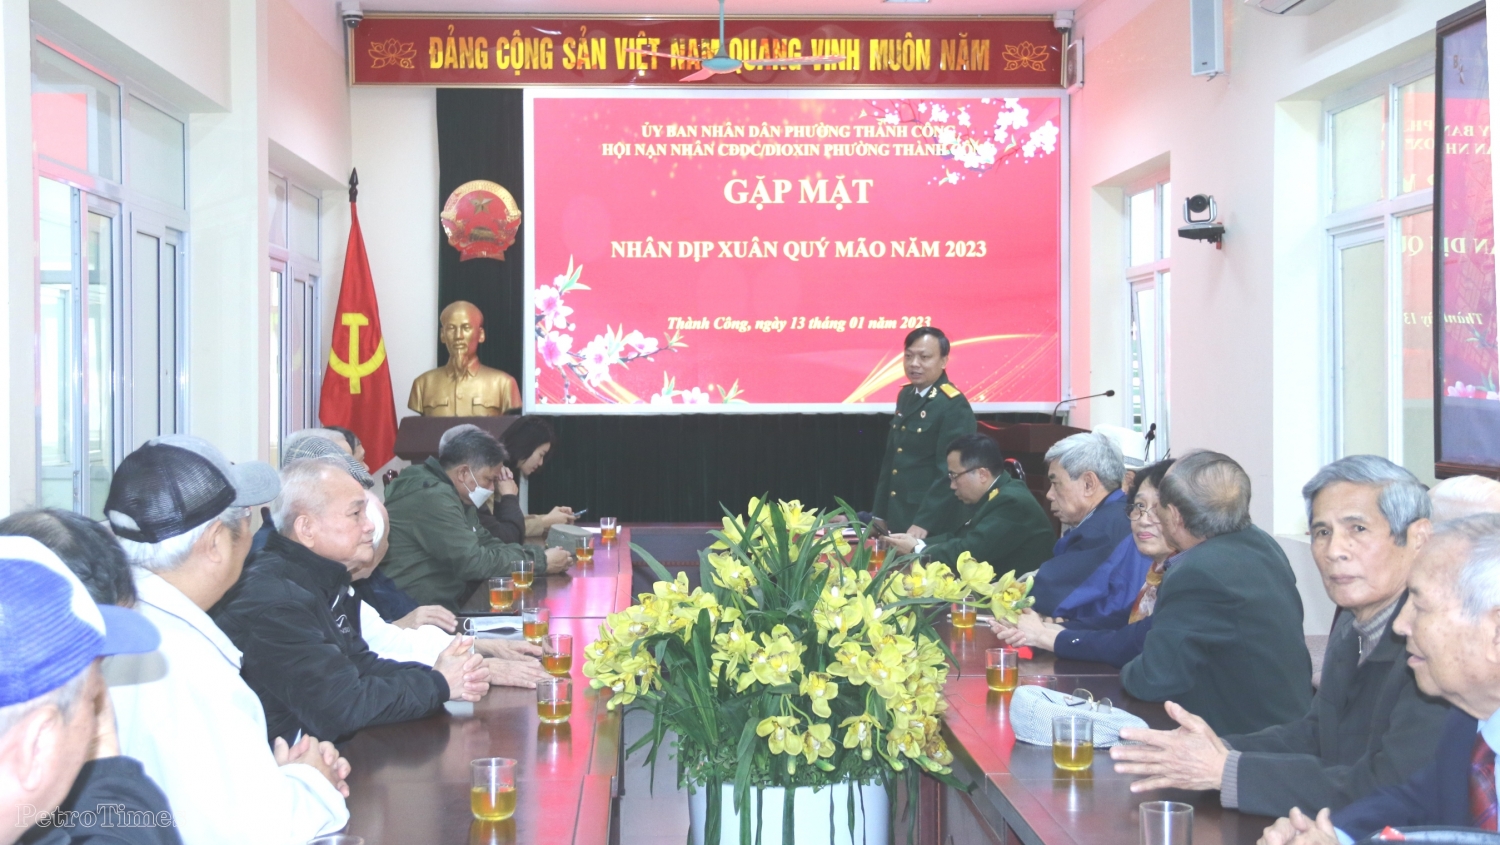 Hội CCB Tập đoàn thăm, tặng quà nạn nhân chất độc da cam/dioxin phường Thành Công